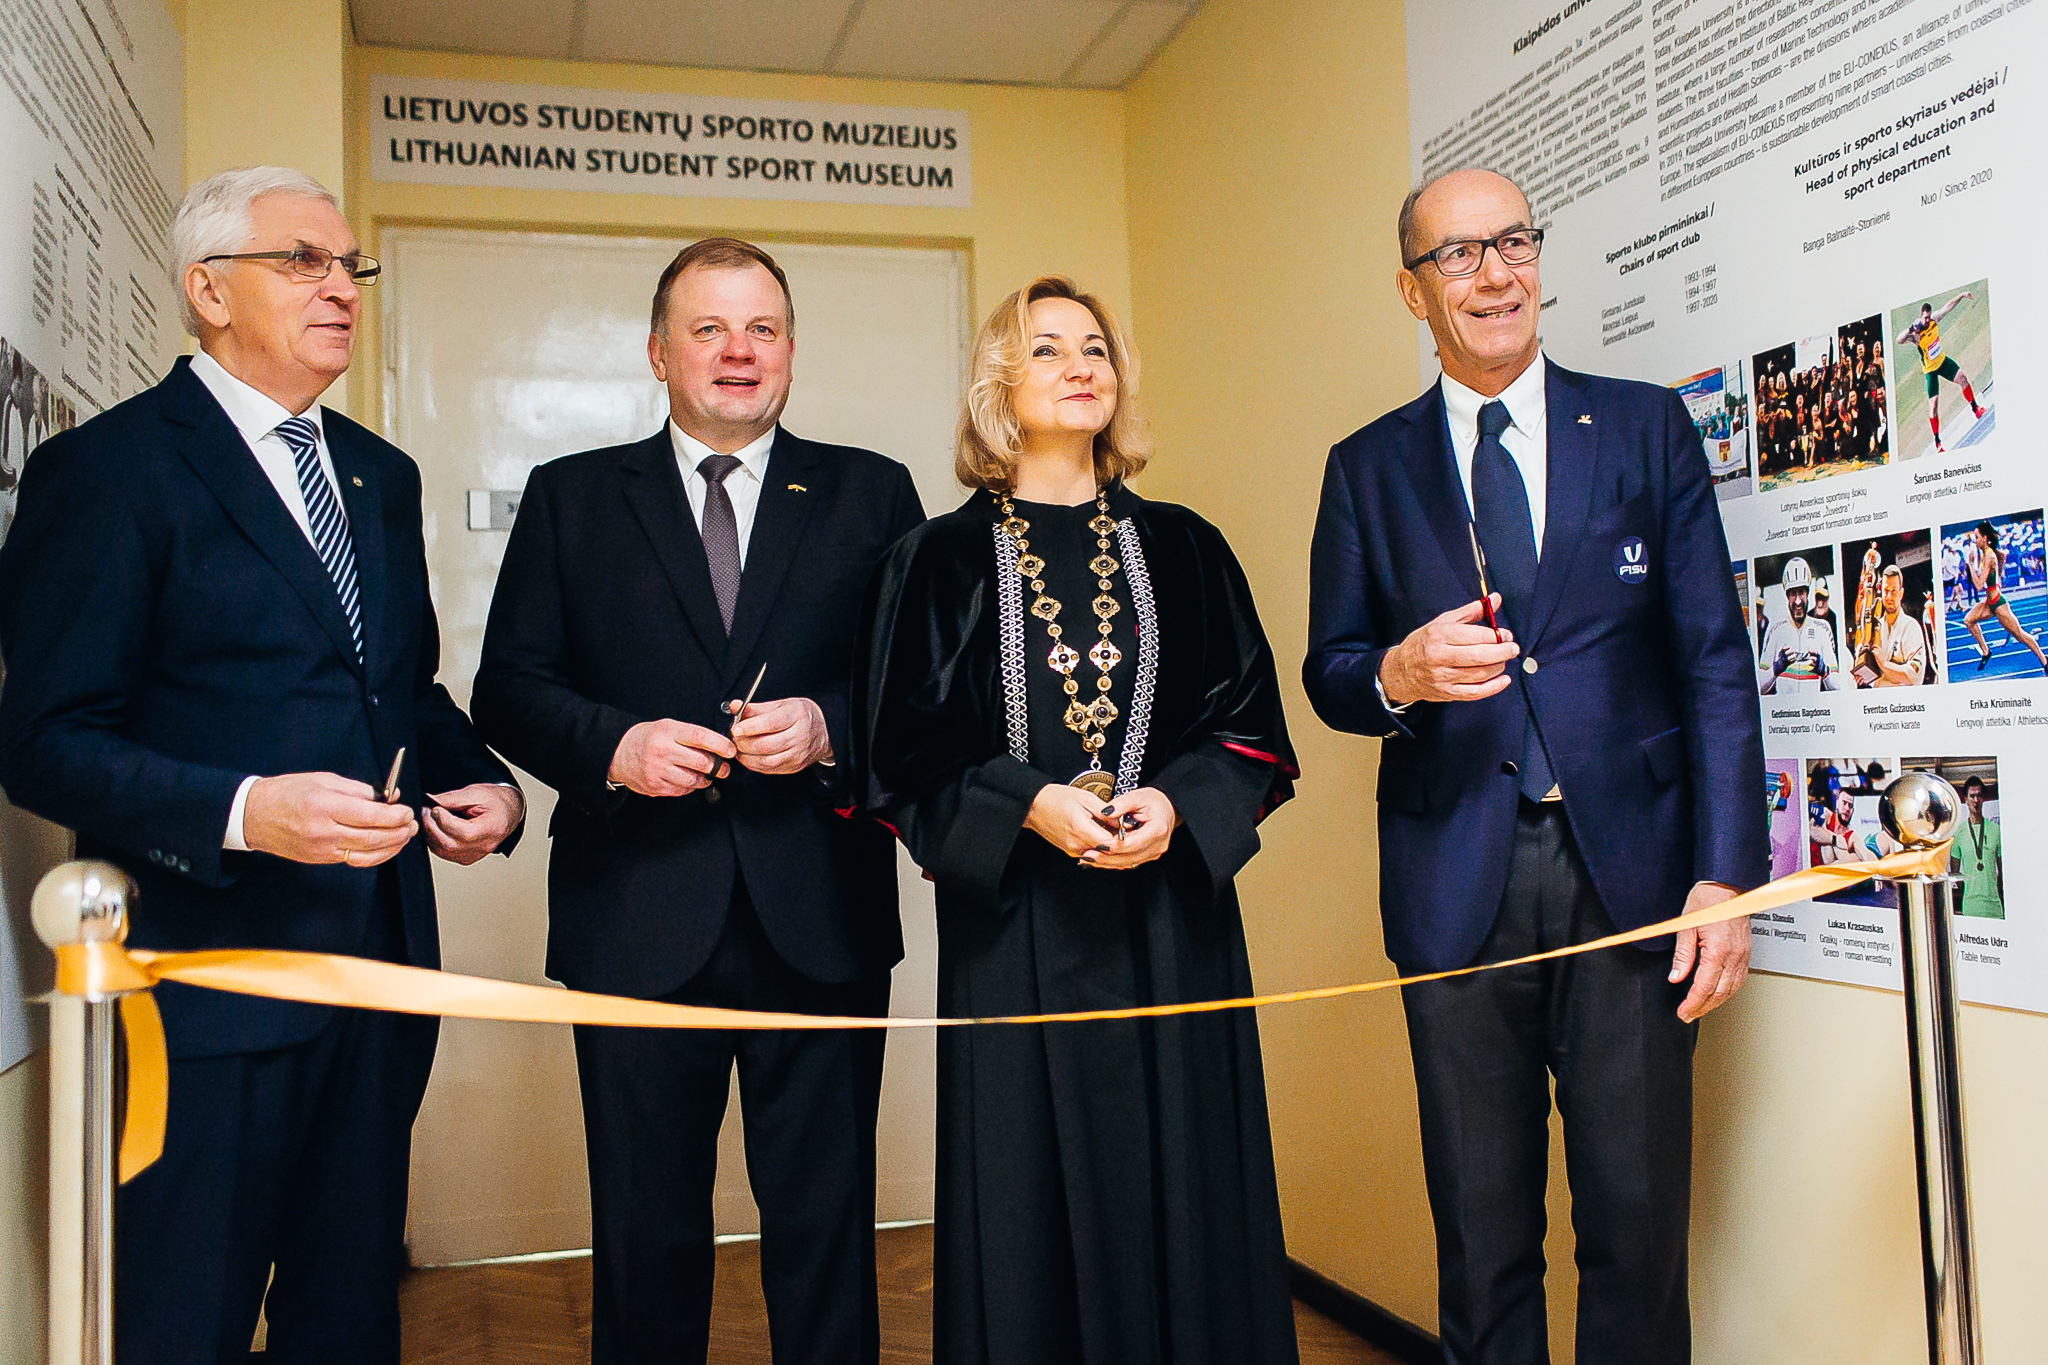 Egyetemi sport múzeum nyílt Litvániában